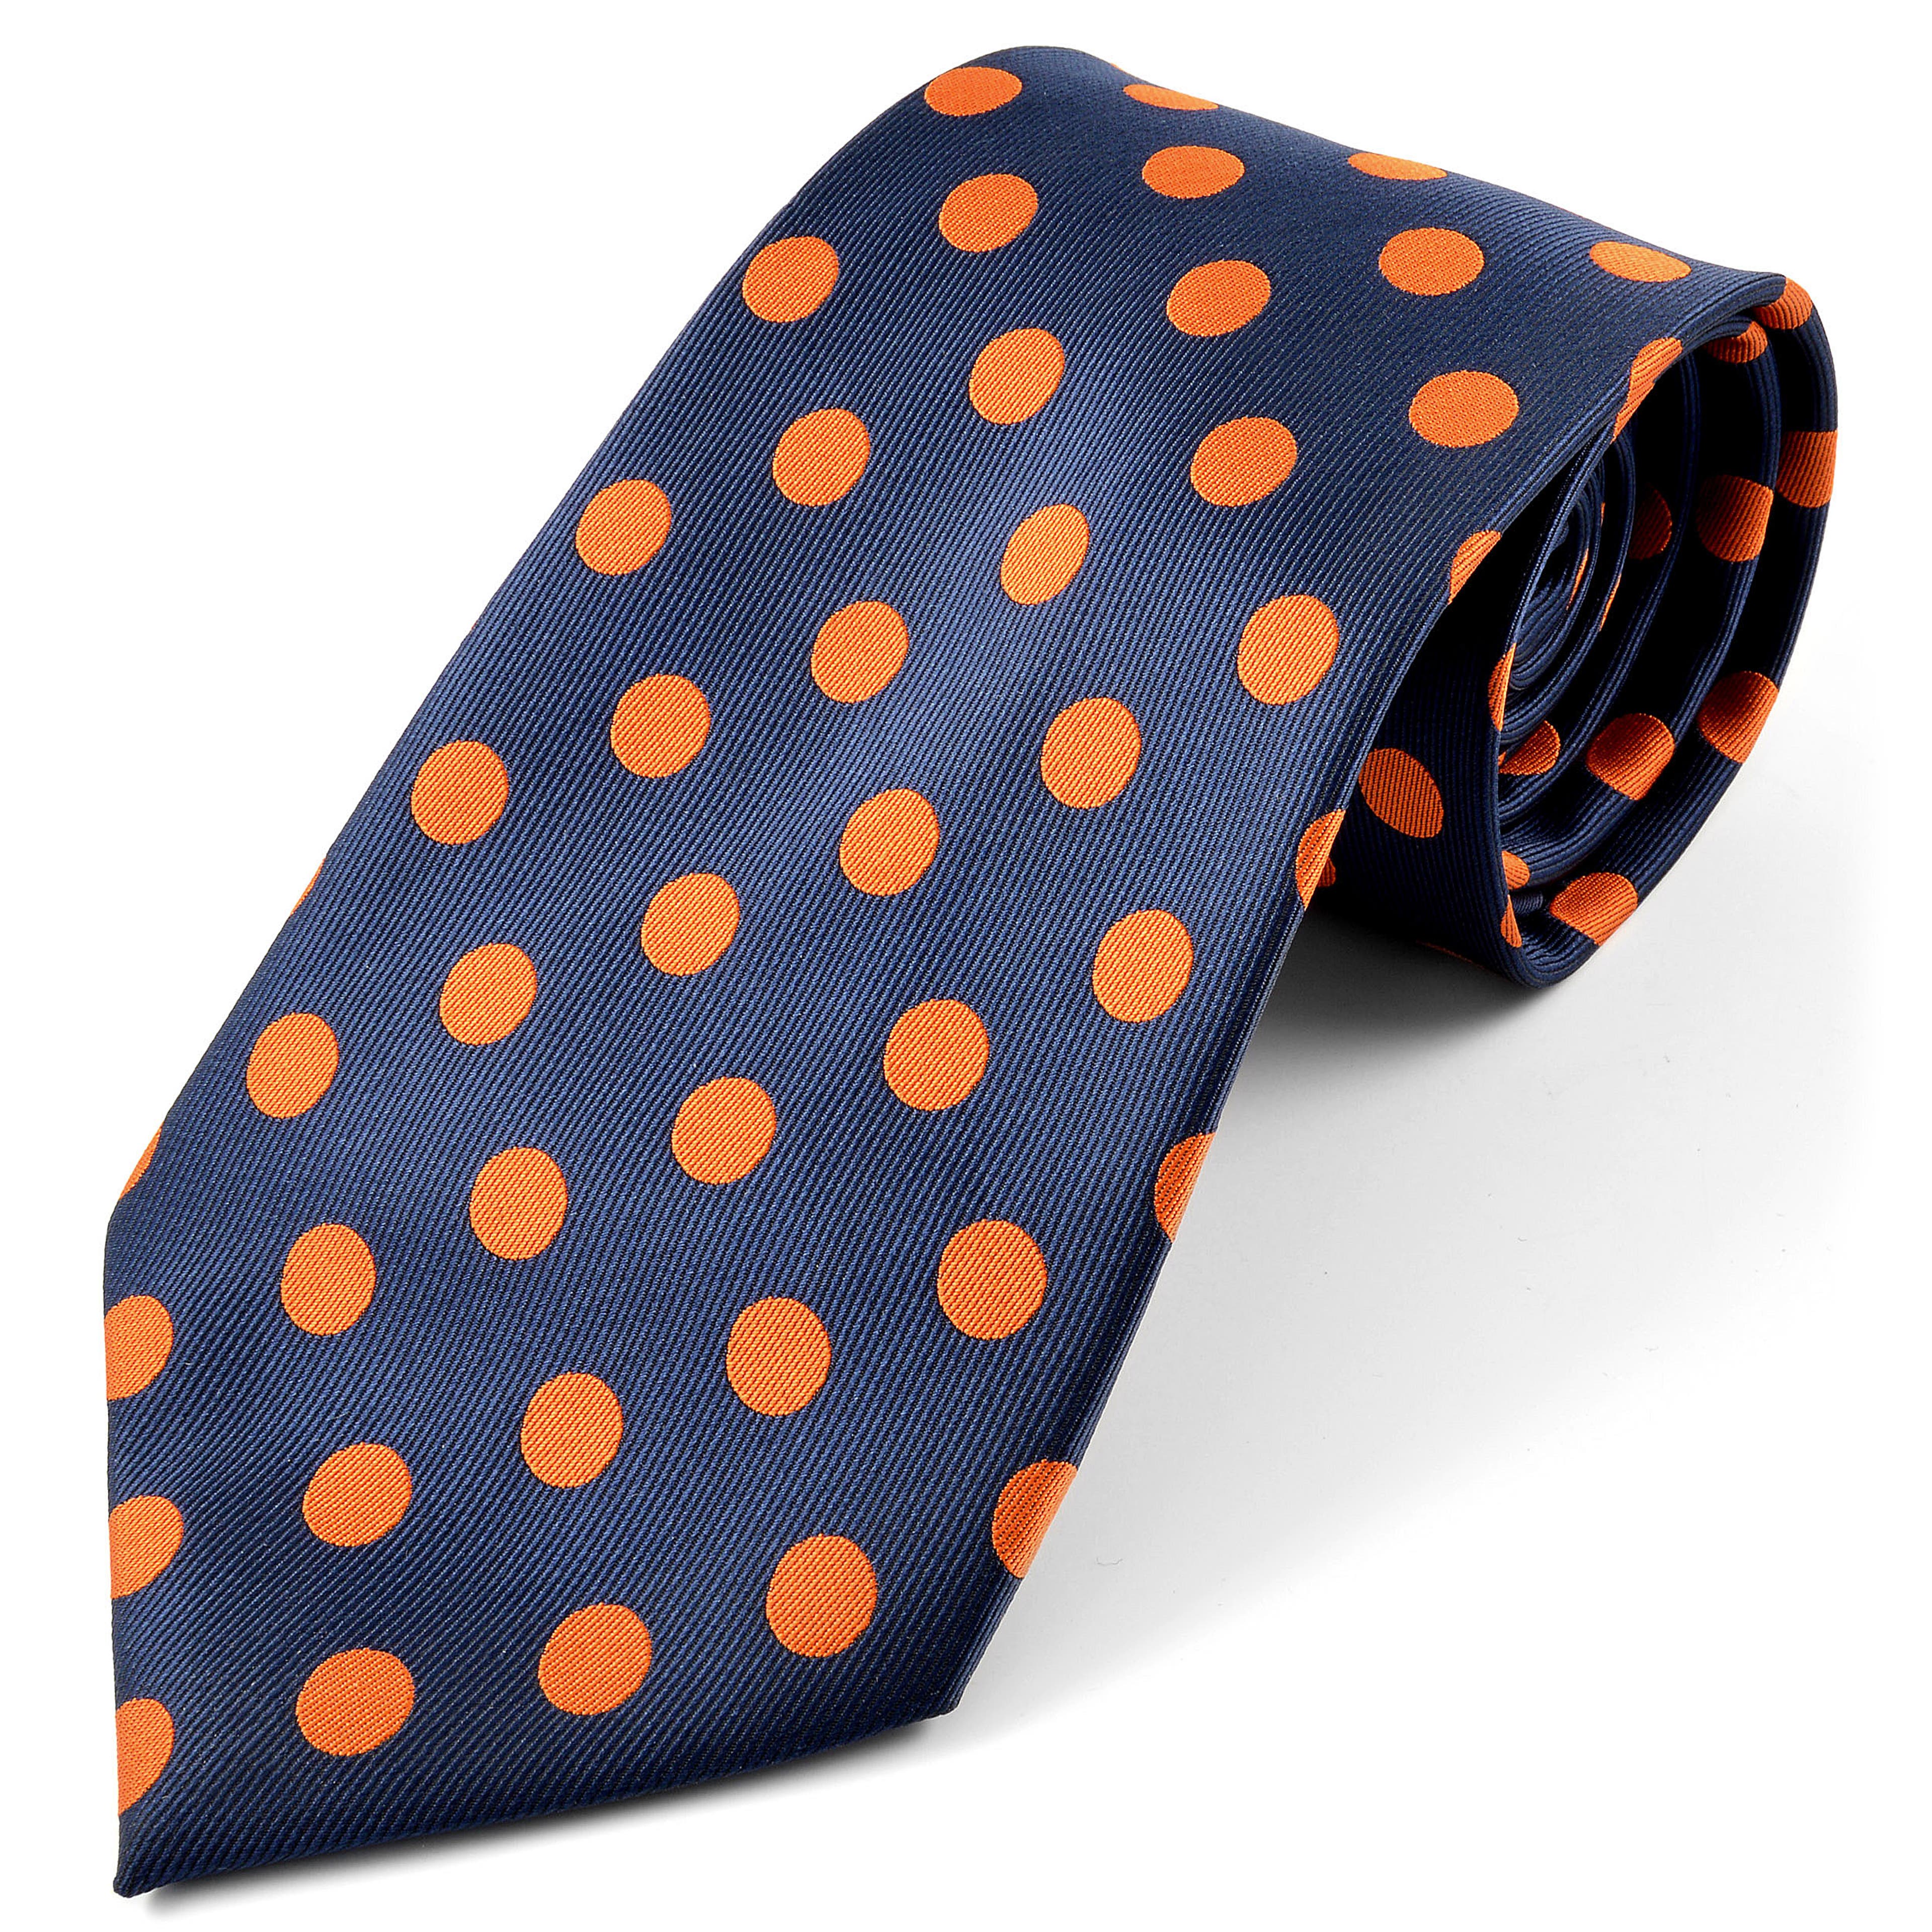 Hedvábná kravata s oranžovými puntíky